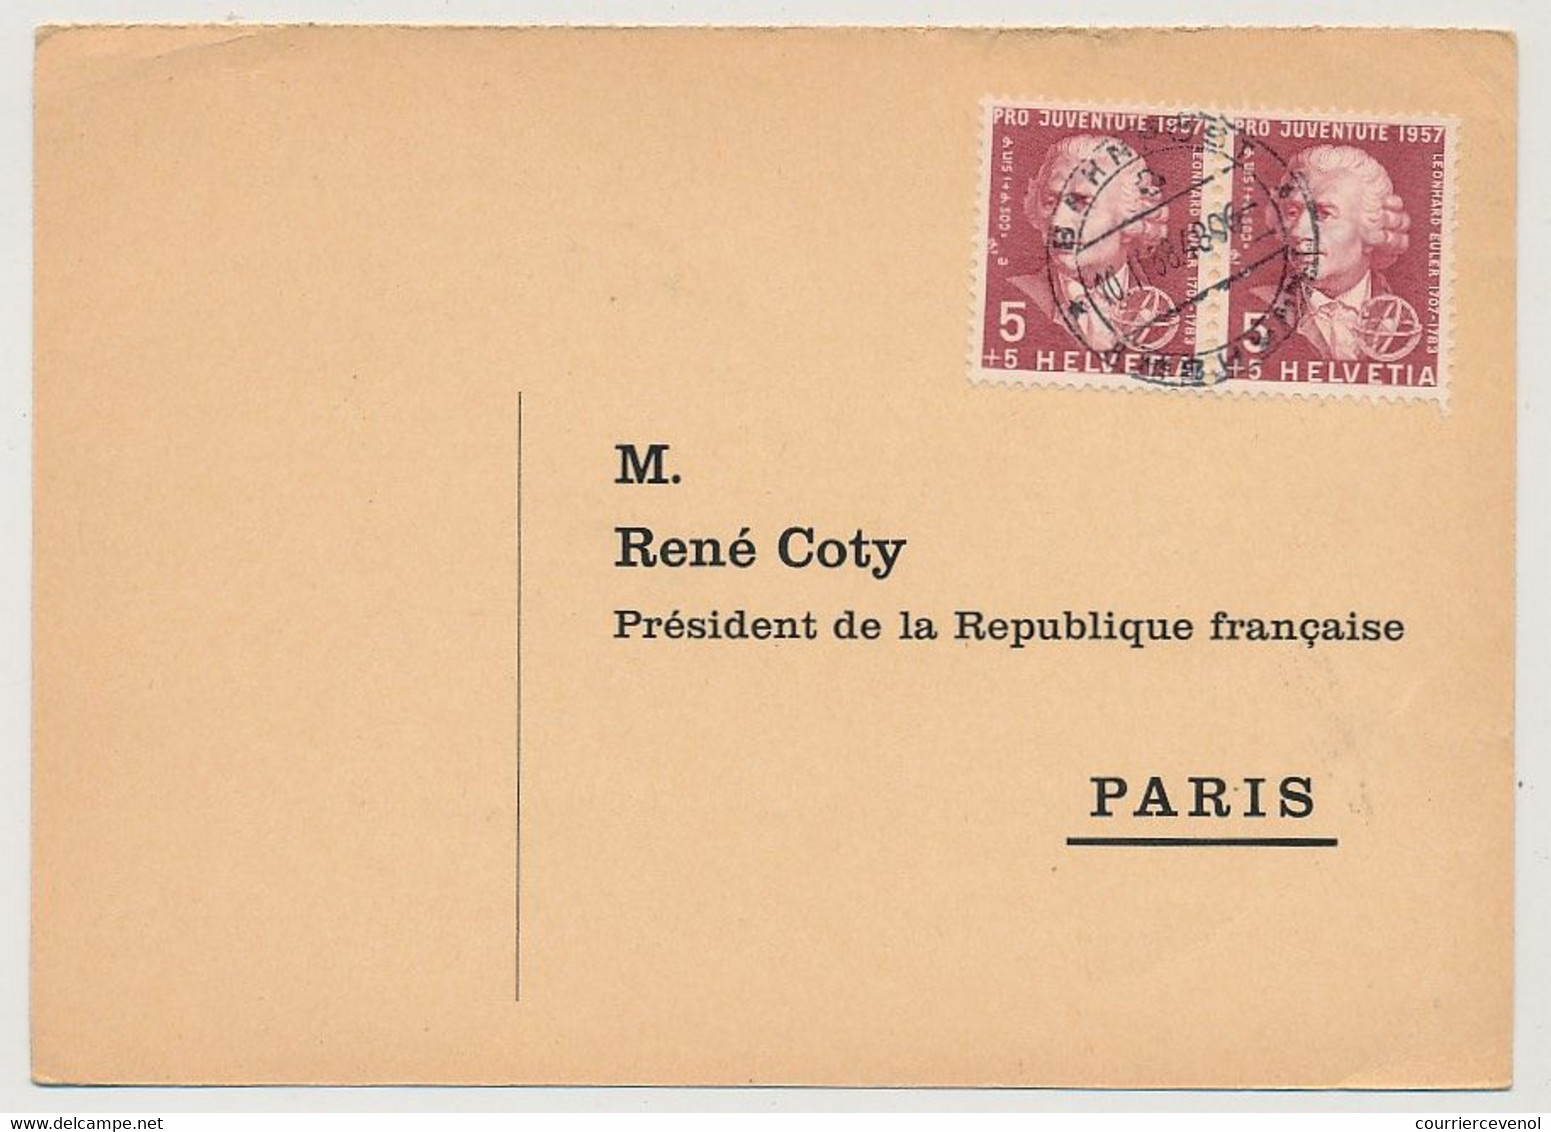 SUISSE / FRANCE - Carte Pétition Pour La Révision De Procès De Djamila Bouhired, Adressée Au Président Coty  1958 - Covers & Documents